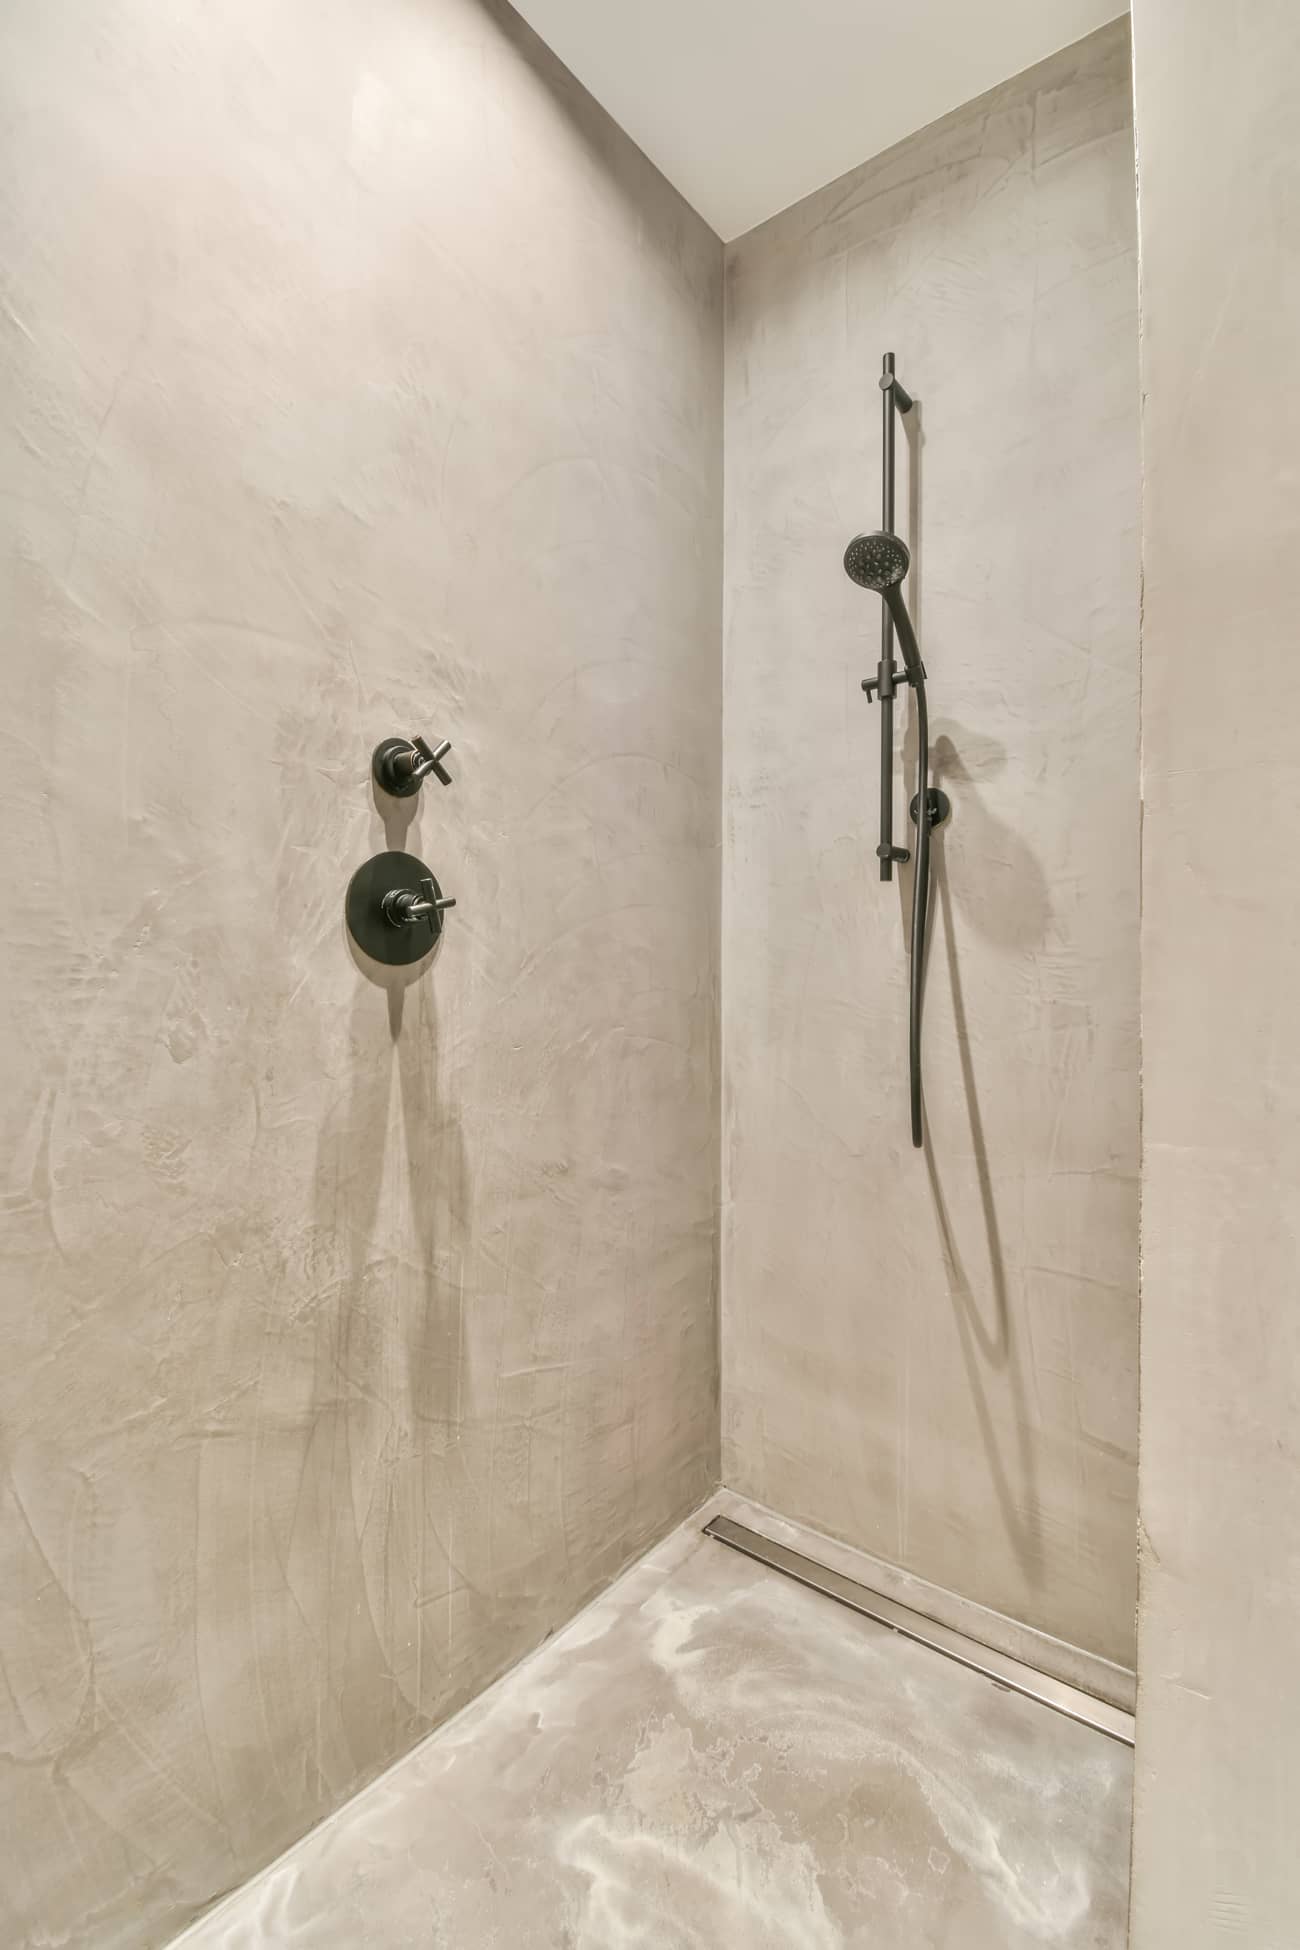 Salle de bain rénovée avec douche en microbéton sur le sol et les murs